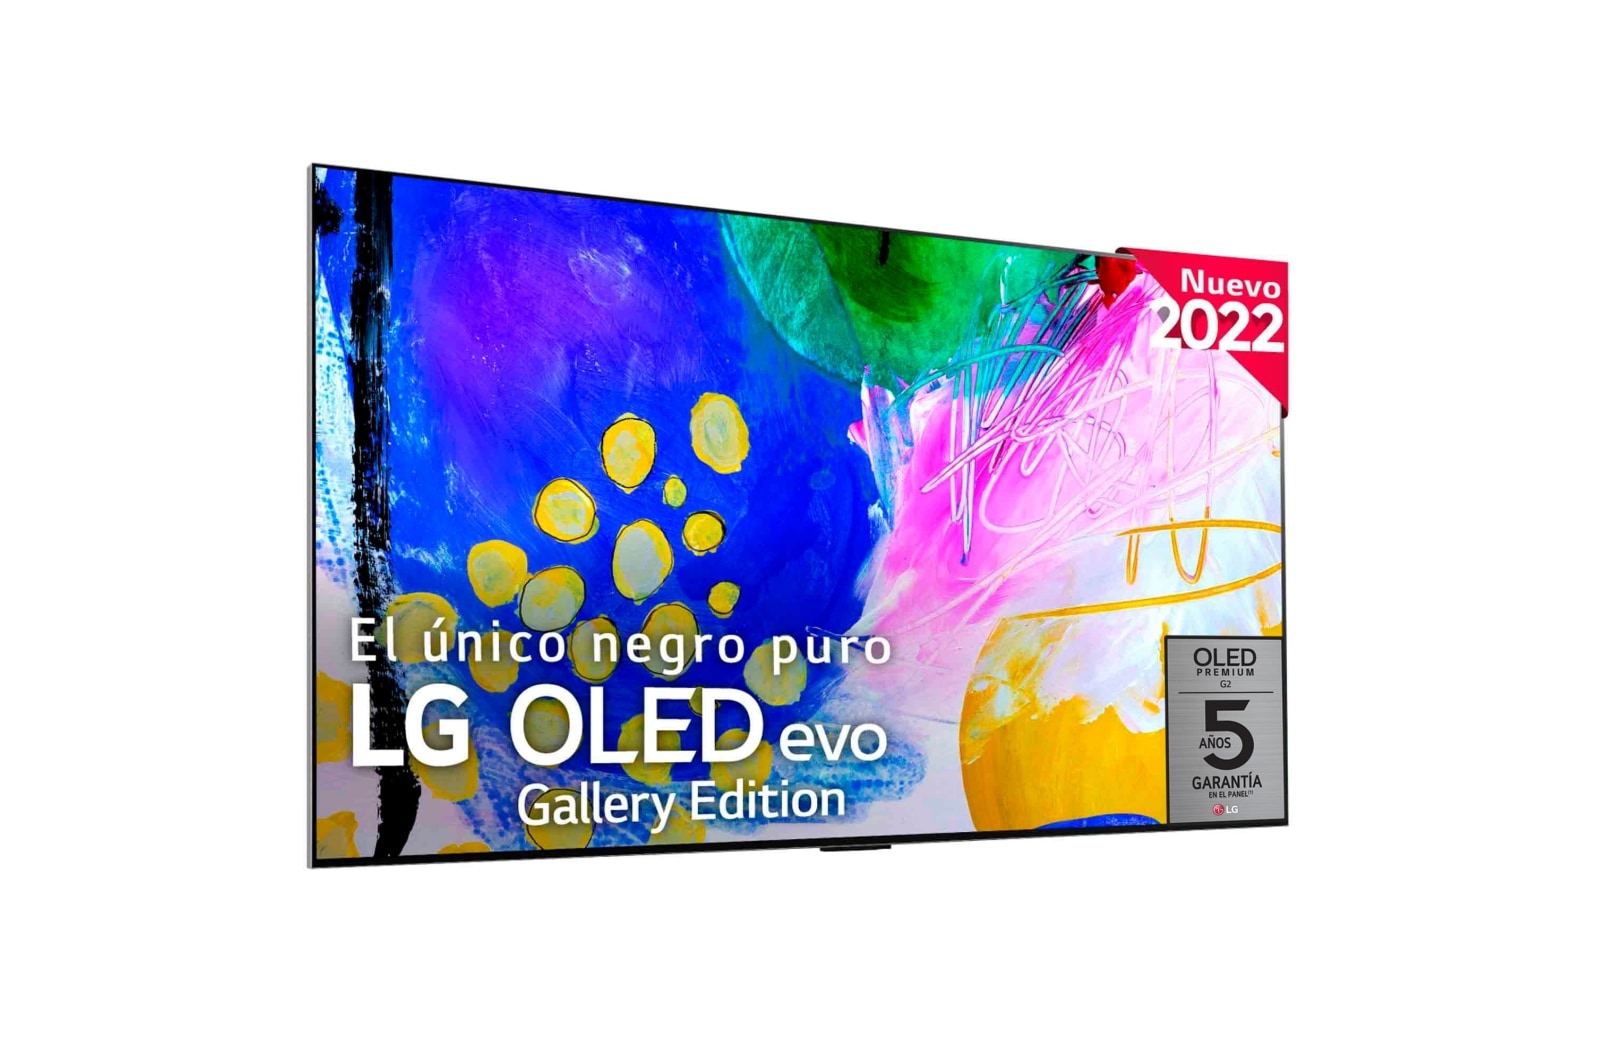 LG Televisor LG  4K OLED evo Gallery Edition, Procesador Inteligente de Máxima Potencia 4K a9 Gen 5 con IA, compatible con el 100% de formatos HDR, HDR Dolby Vision, Dolby Atmos, Smart TV webOS22, el mejor TV para Gaming.<br>Ideal para colgar en la pared., OLED97G29LA